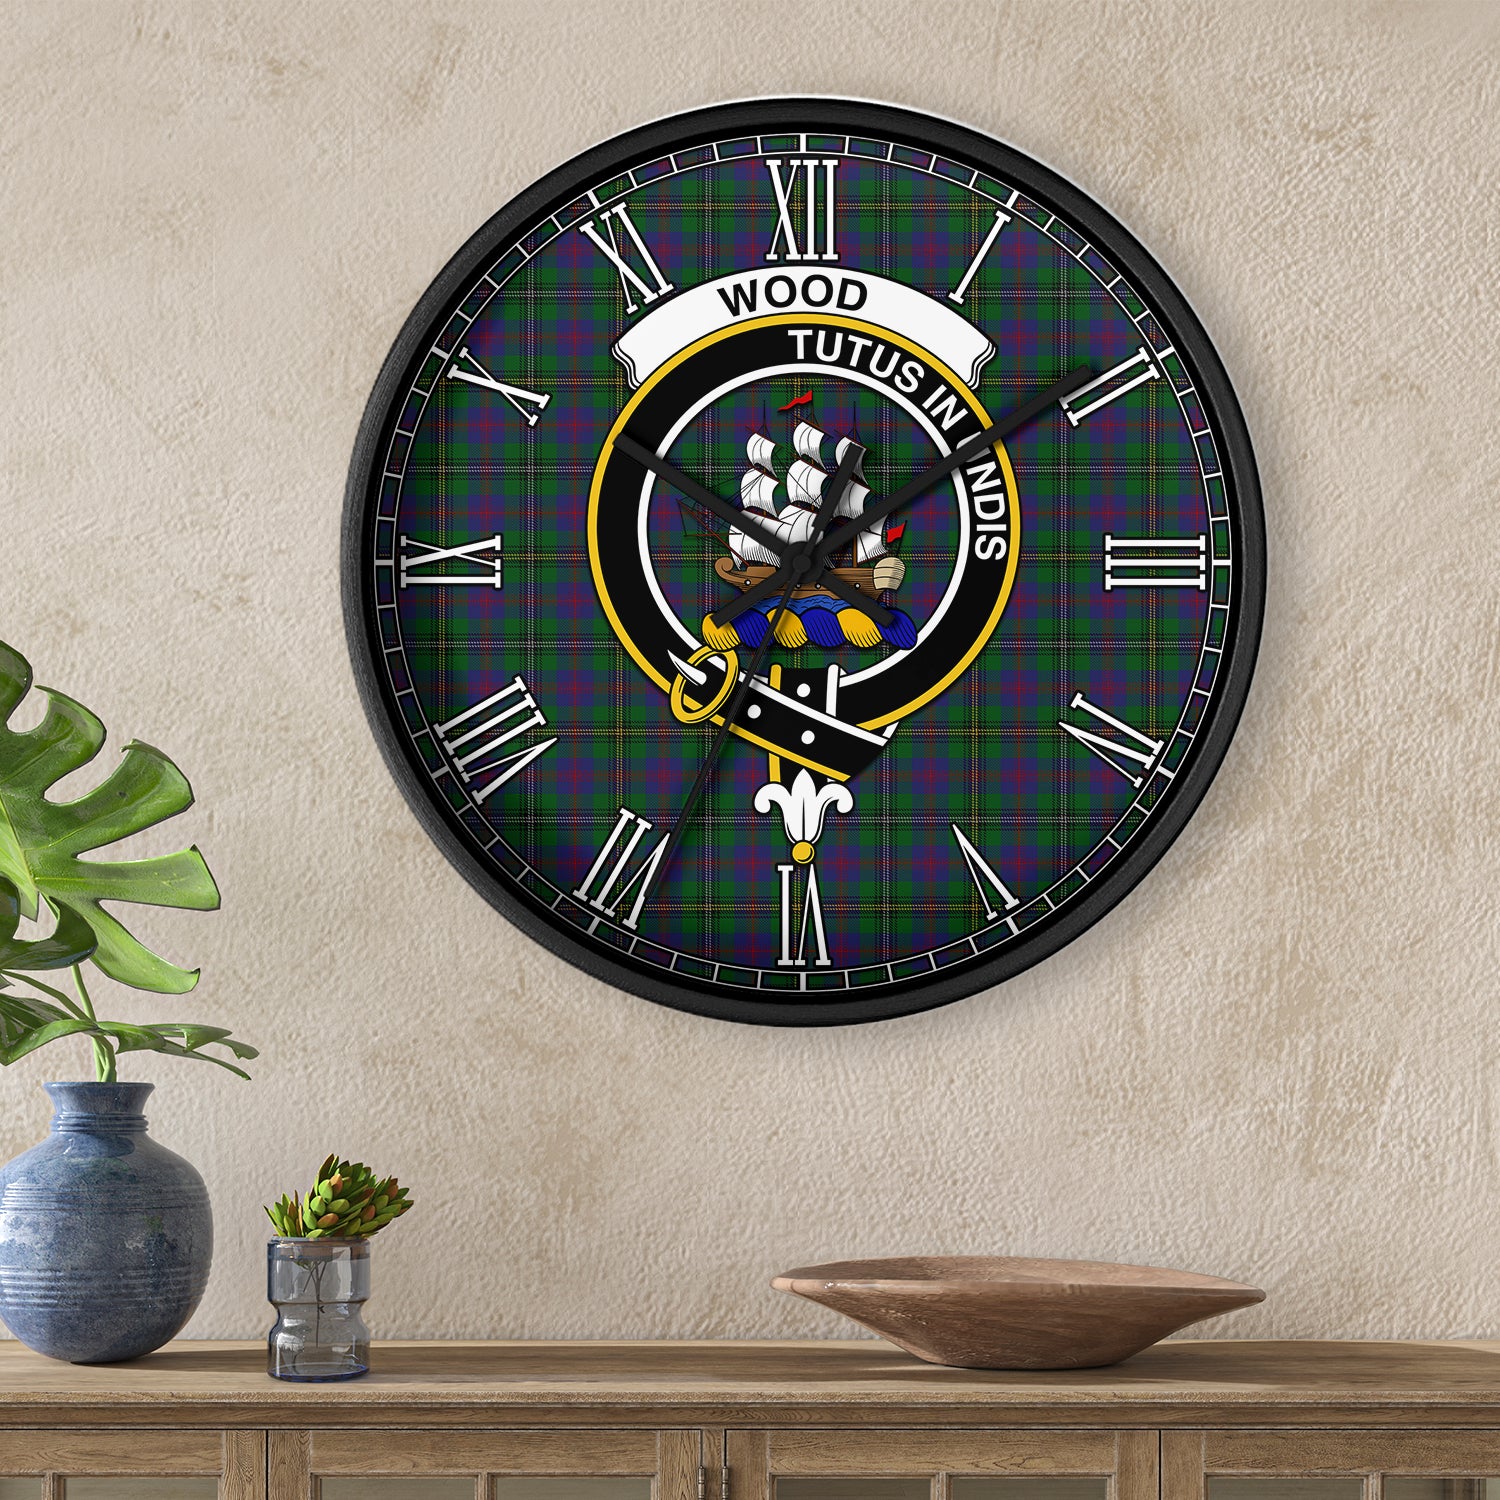 wood-tartan-wall-clock-family-crest-tartan-wall-clock